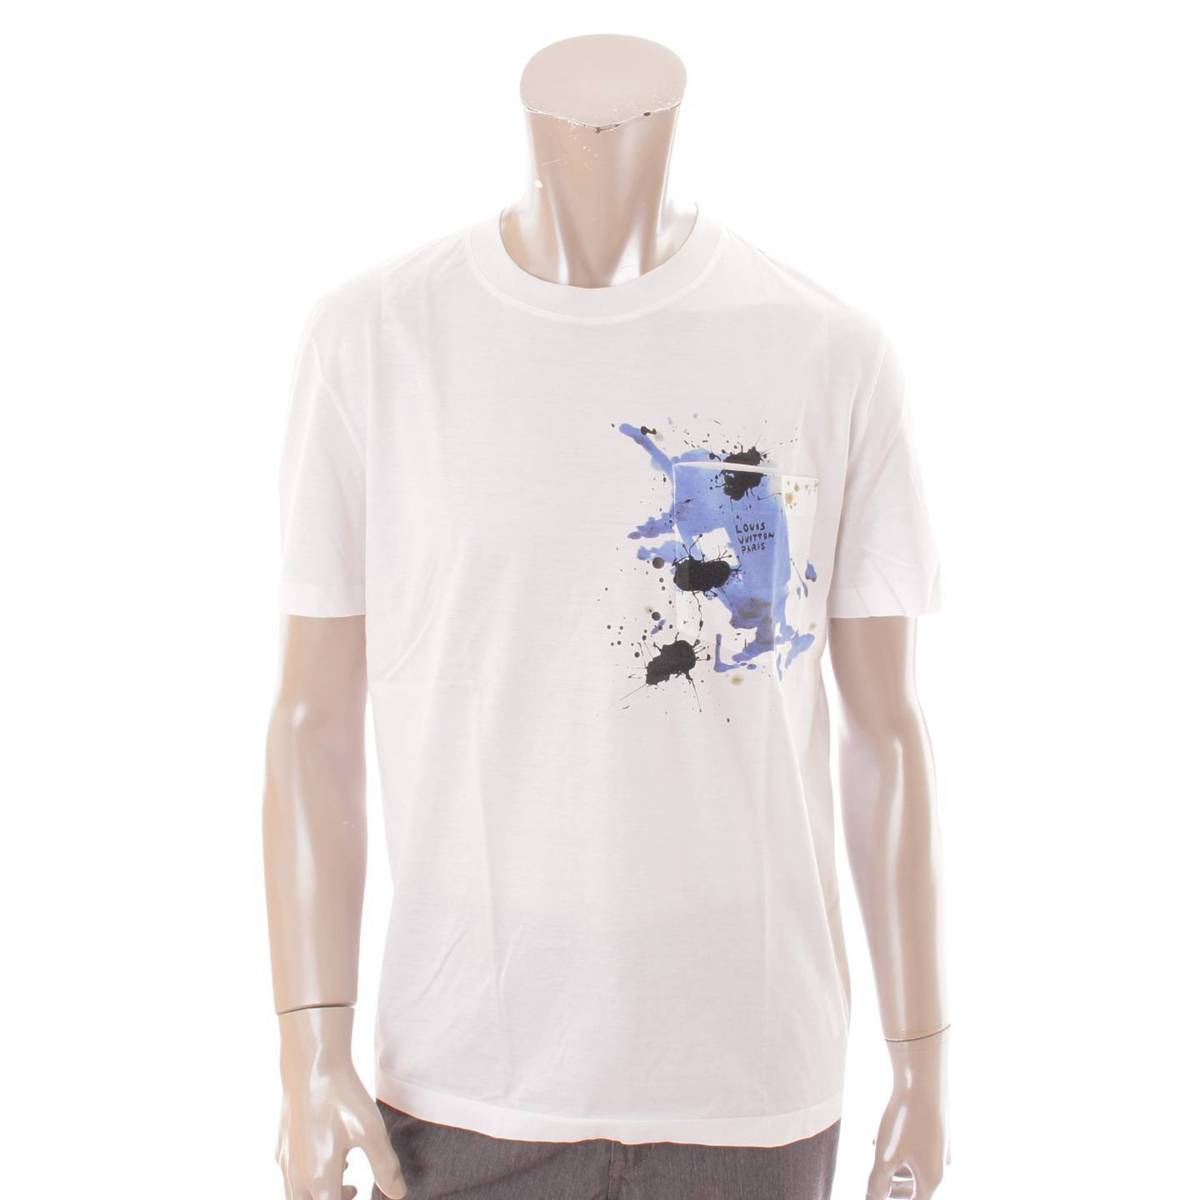 ルイヴィトン(Louis Vuitton) メンズ スプラッシュ ポケット Tシャツ トップス カットソー ホワイト S 中古 通販 retro レトロ